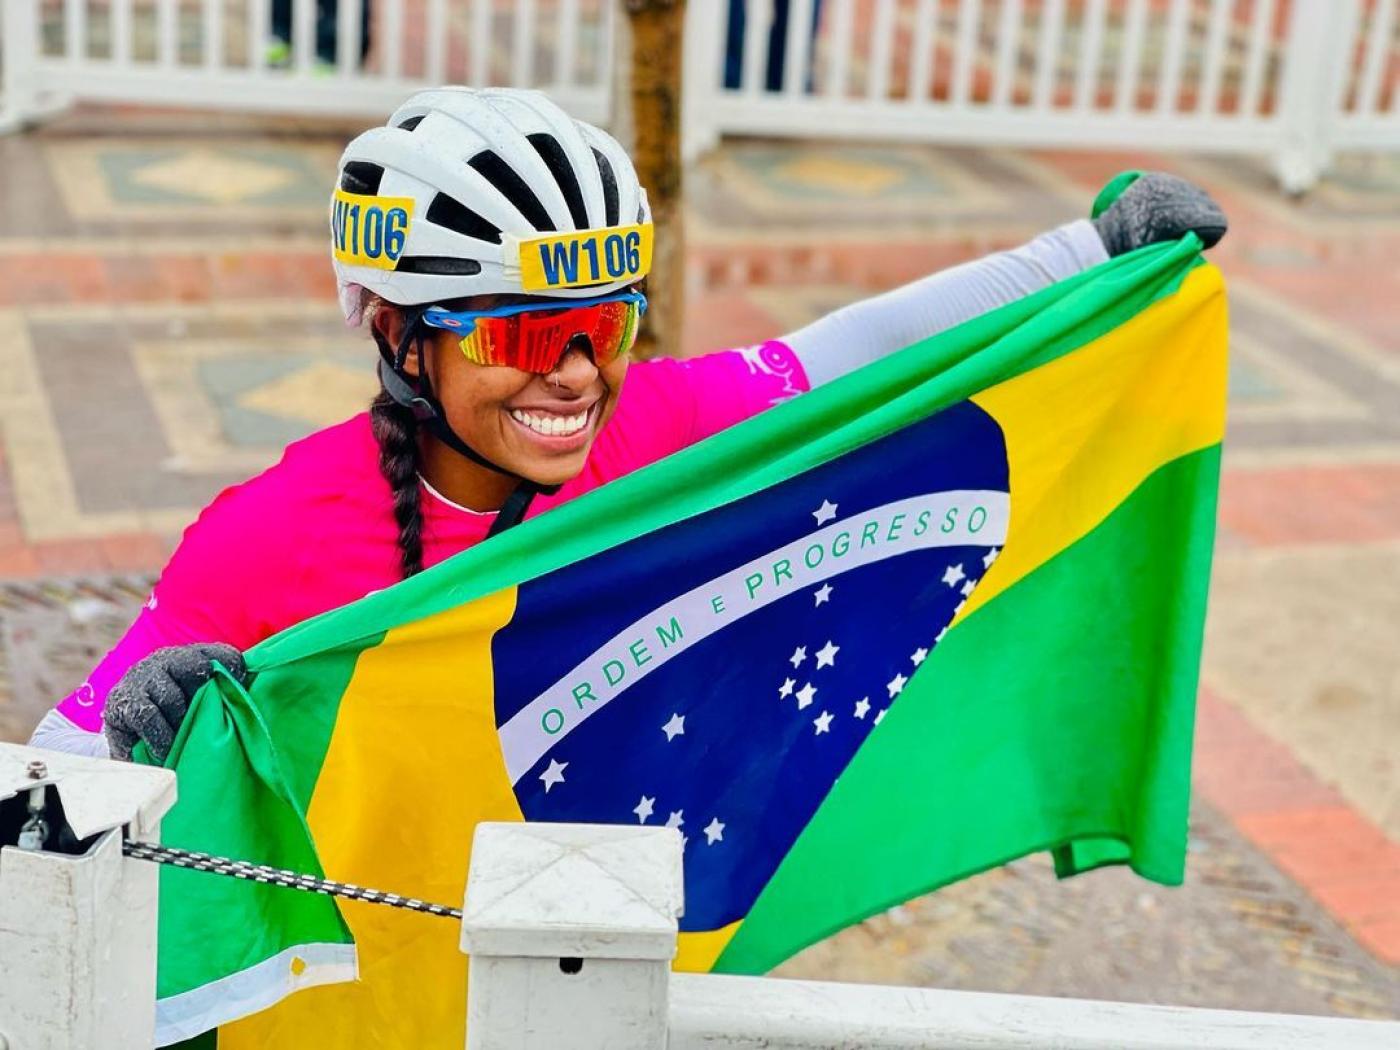 Paraatleta del Santos Vanessa Cristina finaliza cuarta en Maratón de Boston